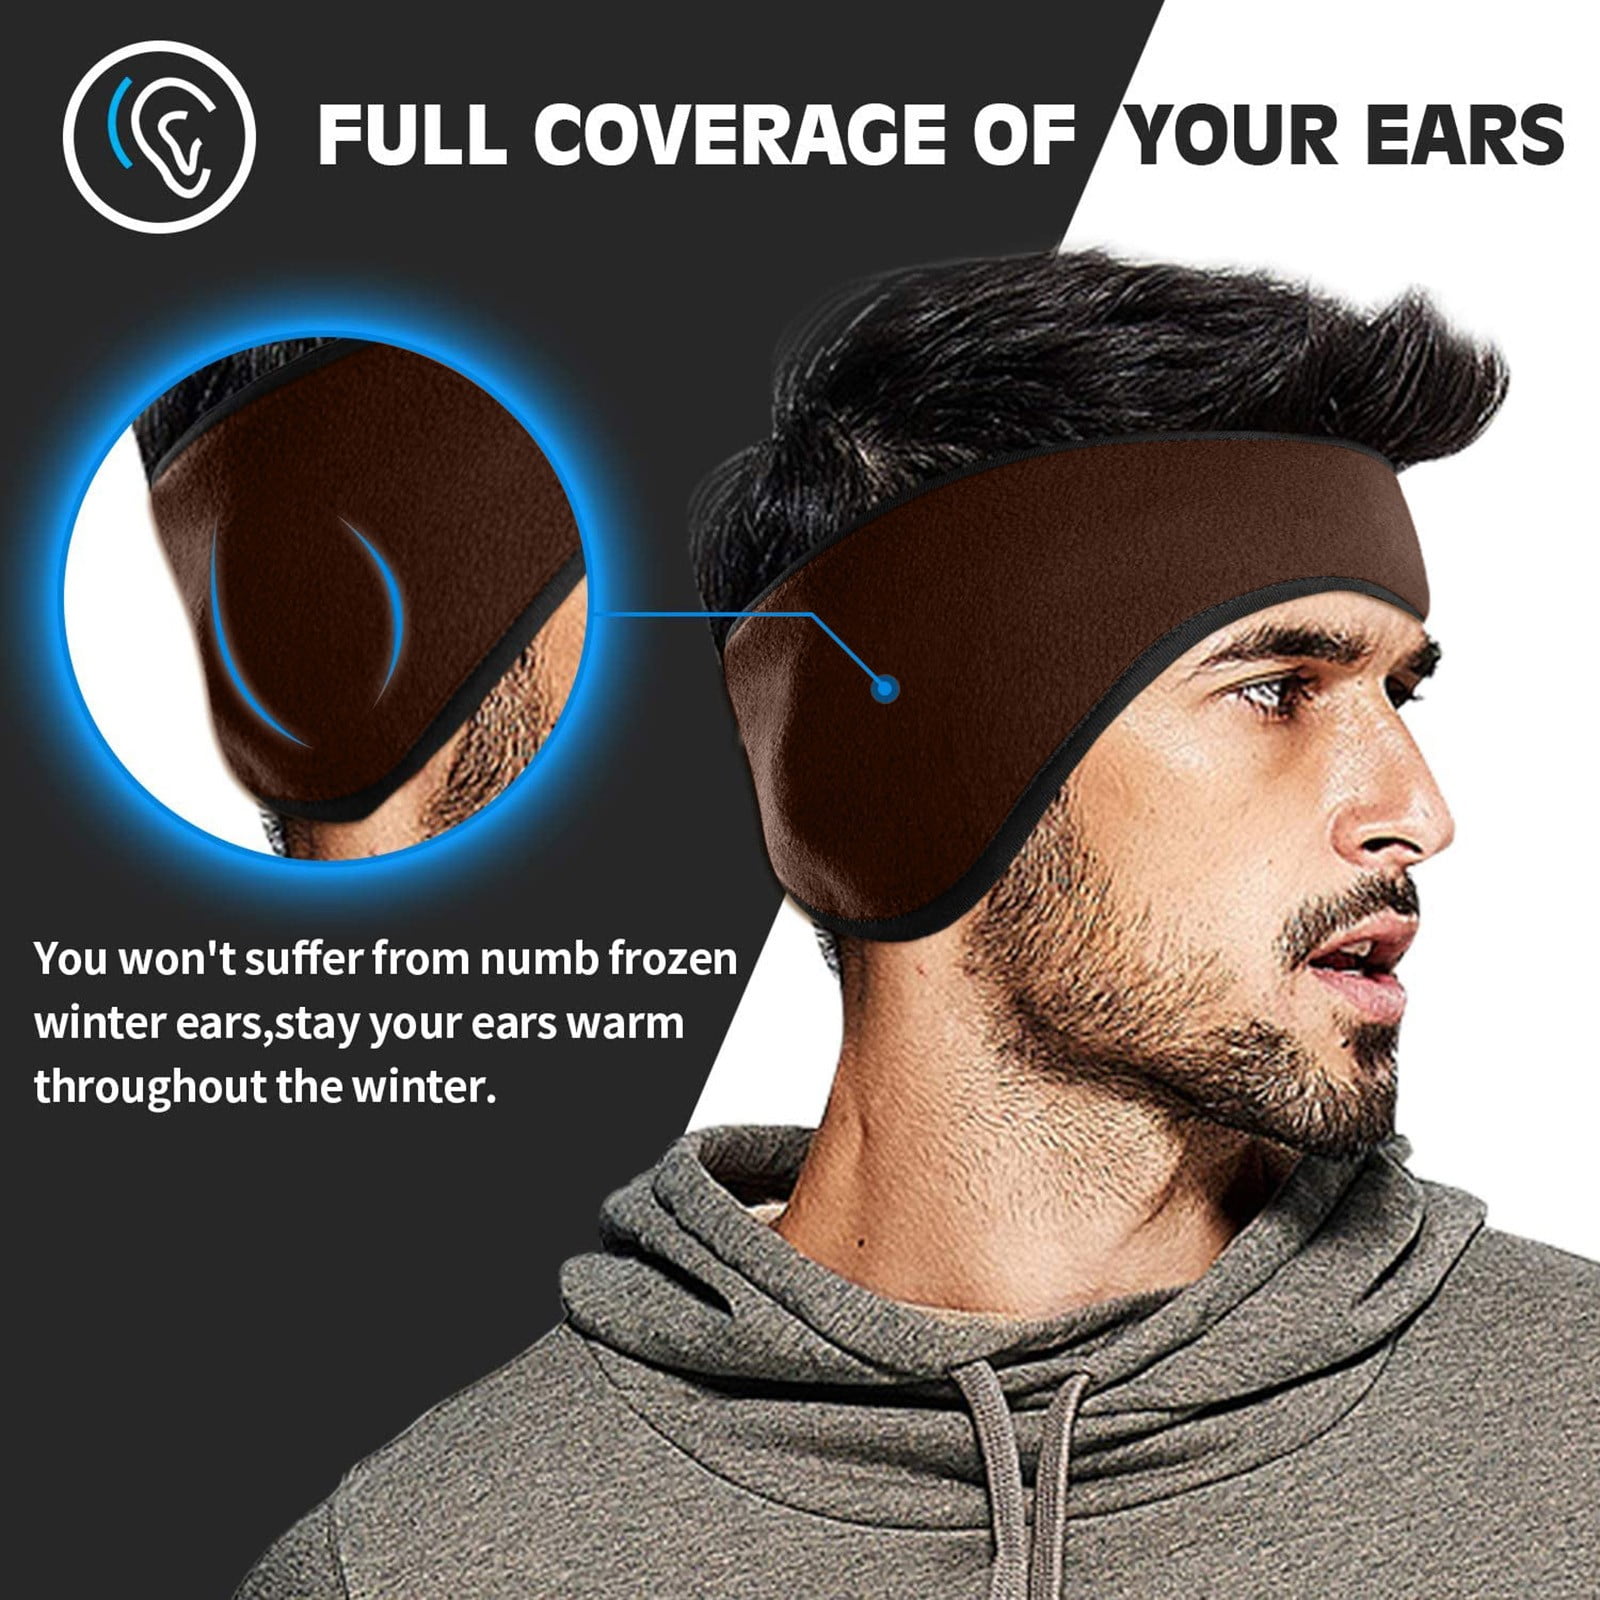 jewelry for women Winter Ear Warmers Muffs Headband For Men Women Kids ...